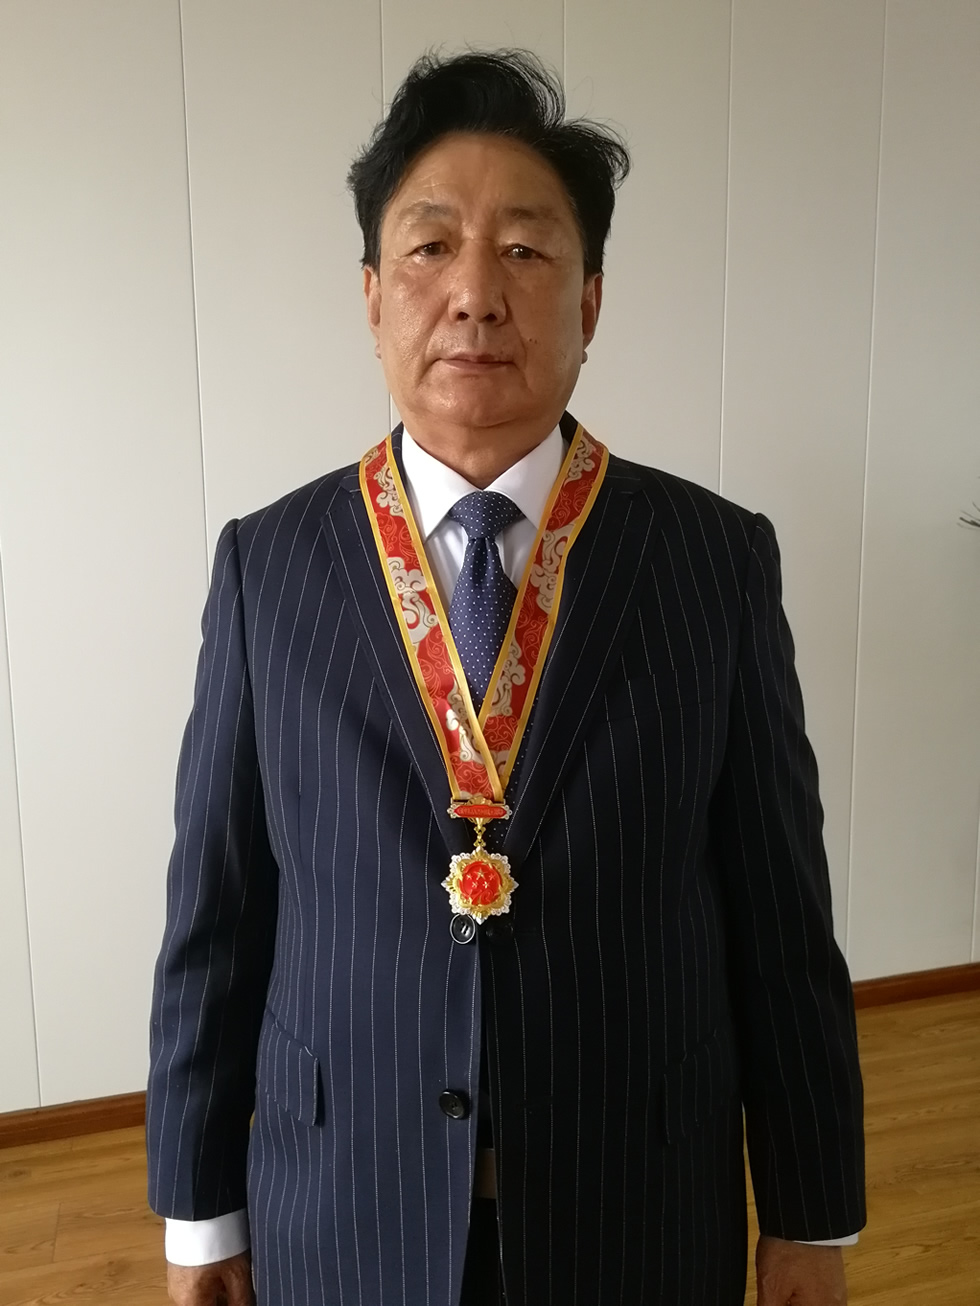 我司董事长焦发兆同志荣获建国70周年纪念章